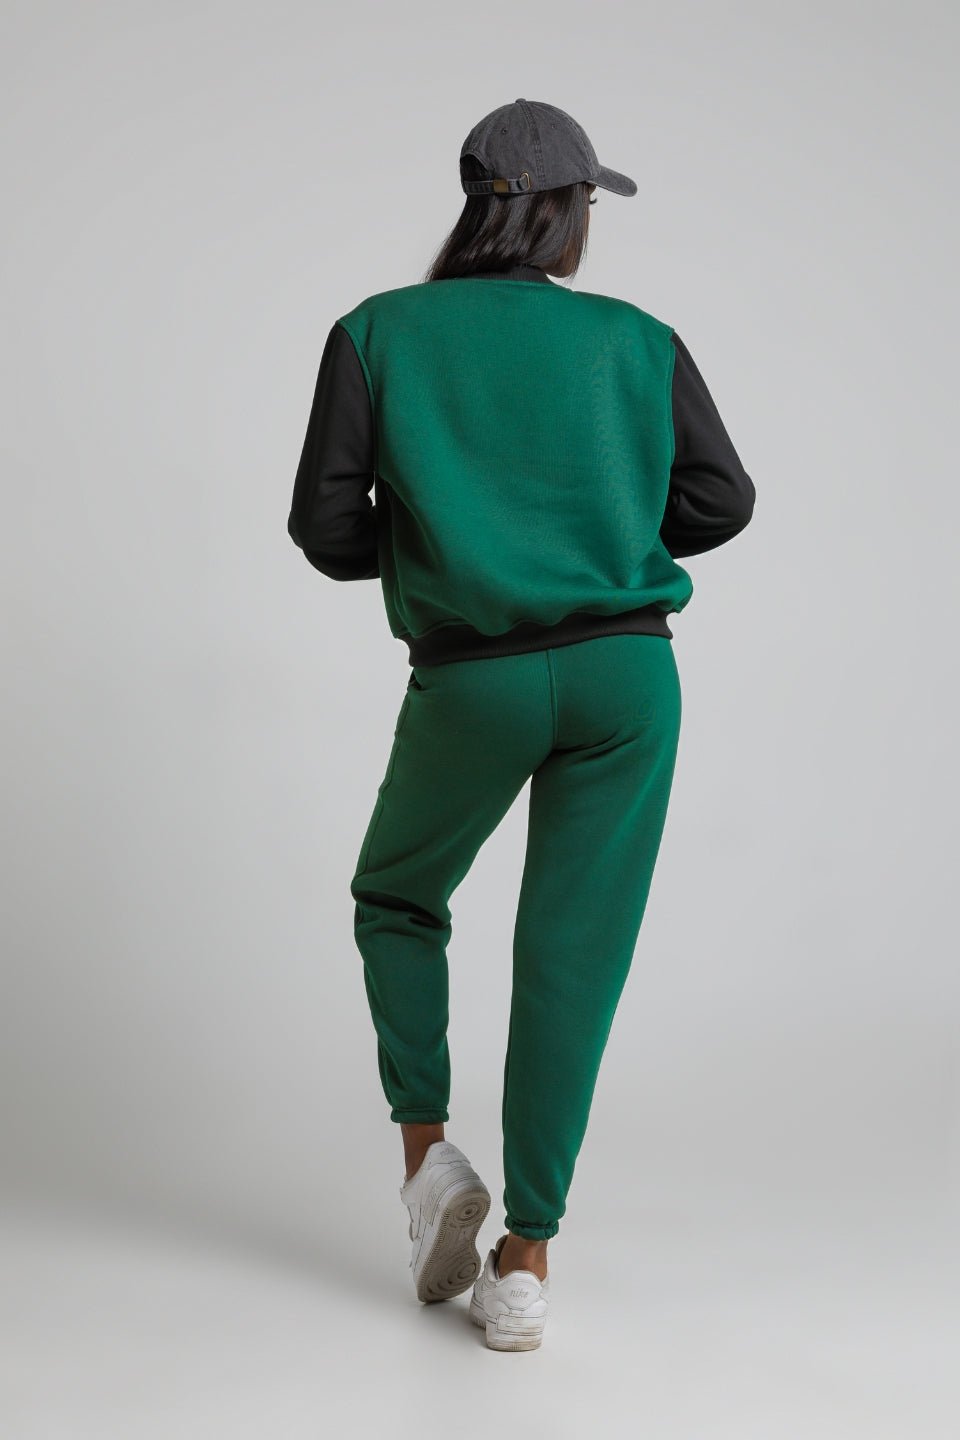 Spodnie dresowe joggery damskie - butelkowa zieleń - Chiara Wear